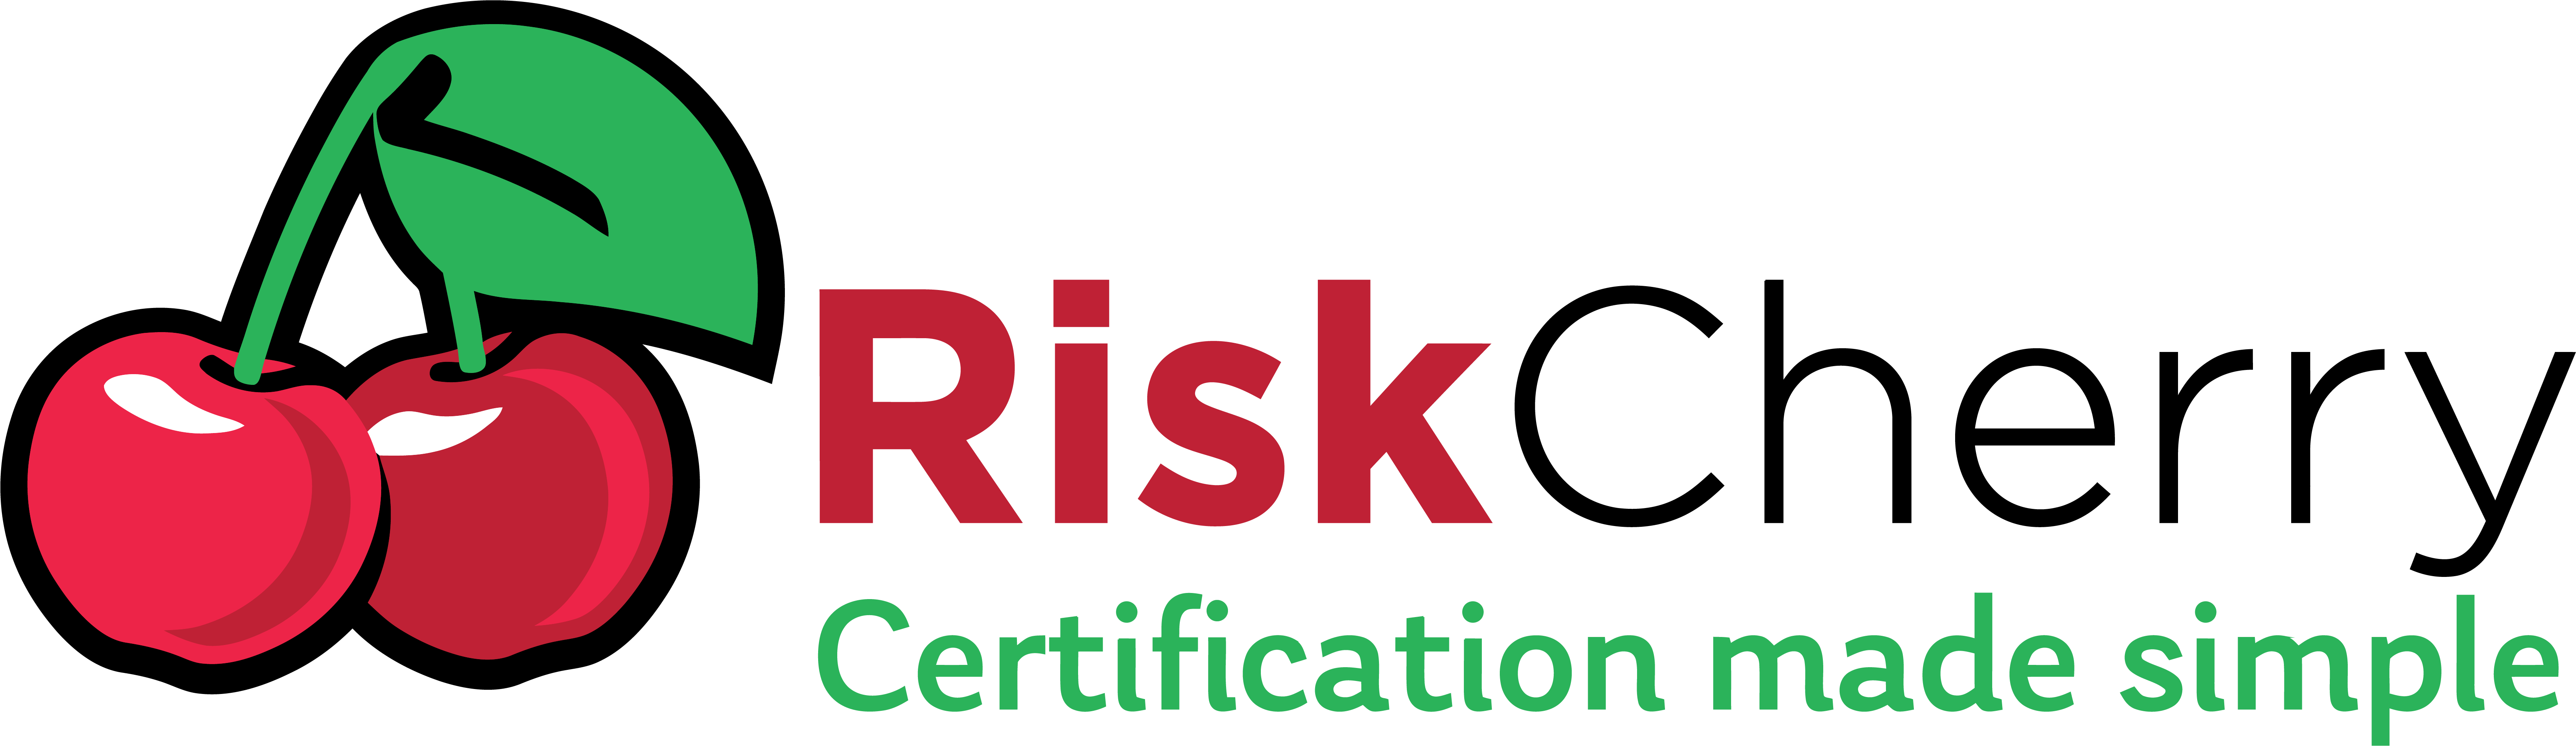 RiskCherry logo